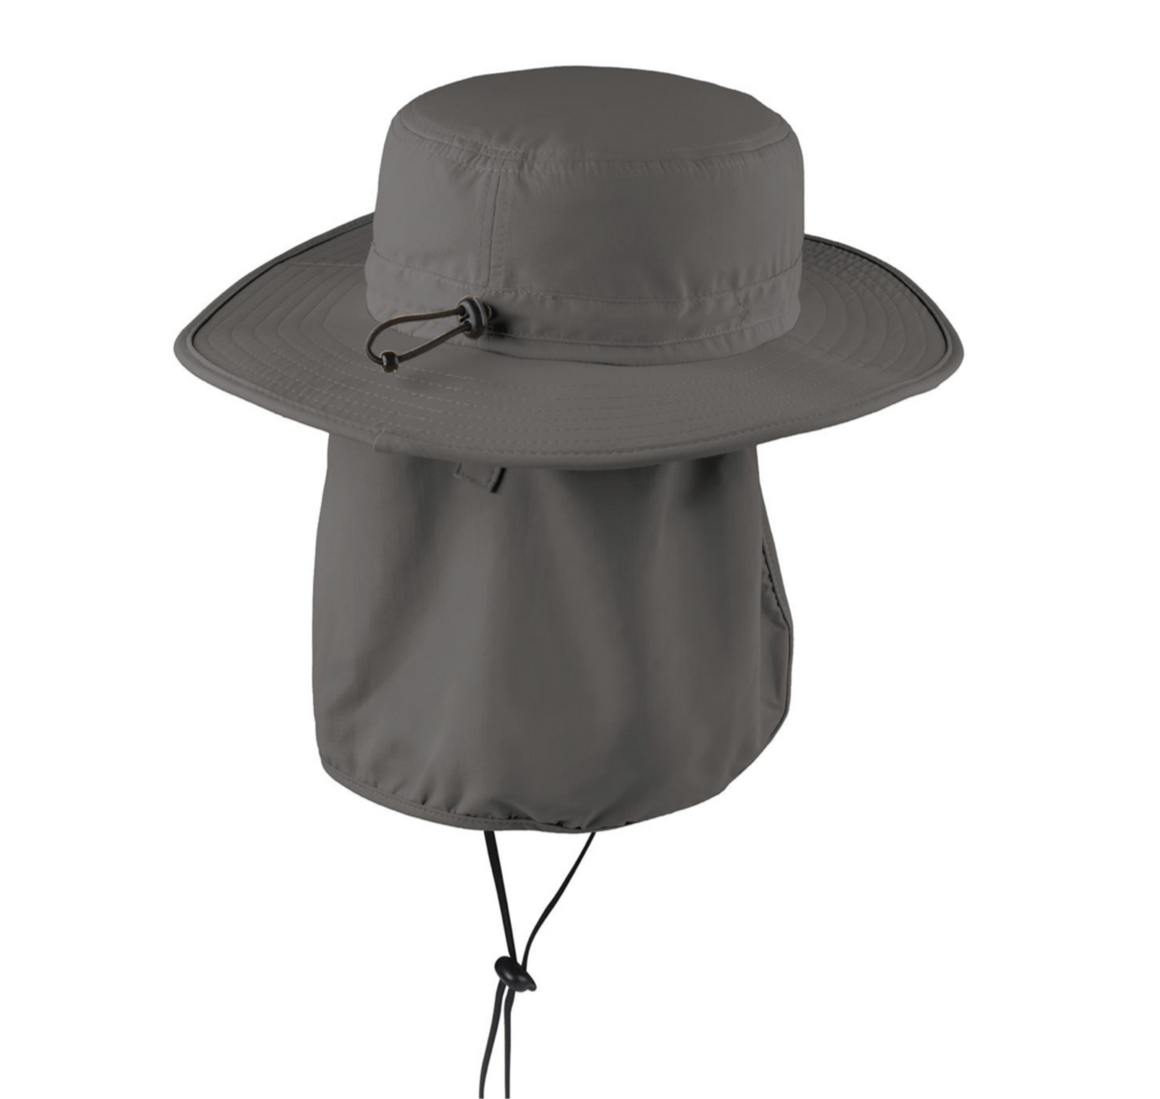 Monogrammed Wide Brim Booney Bucket Sun Hat